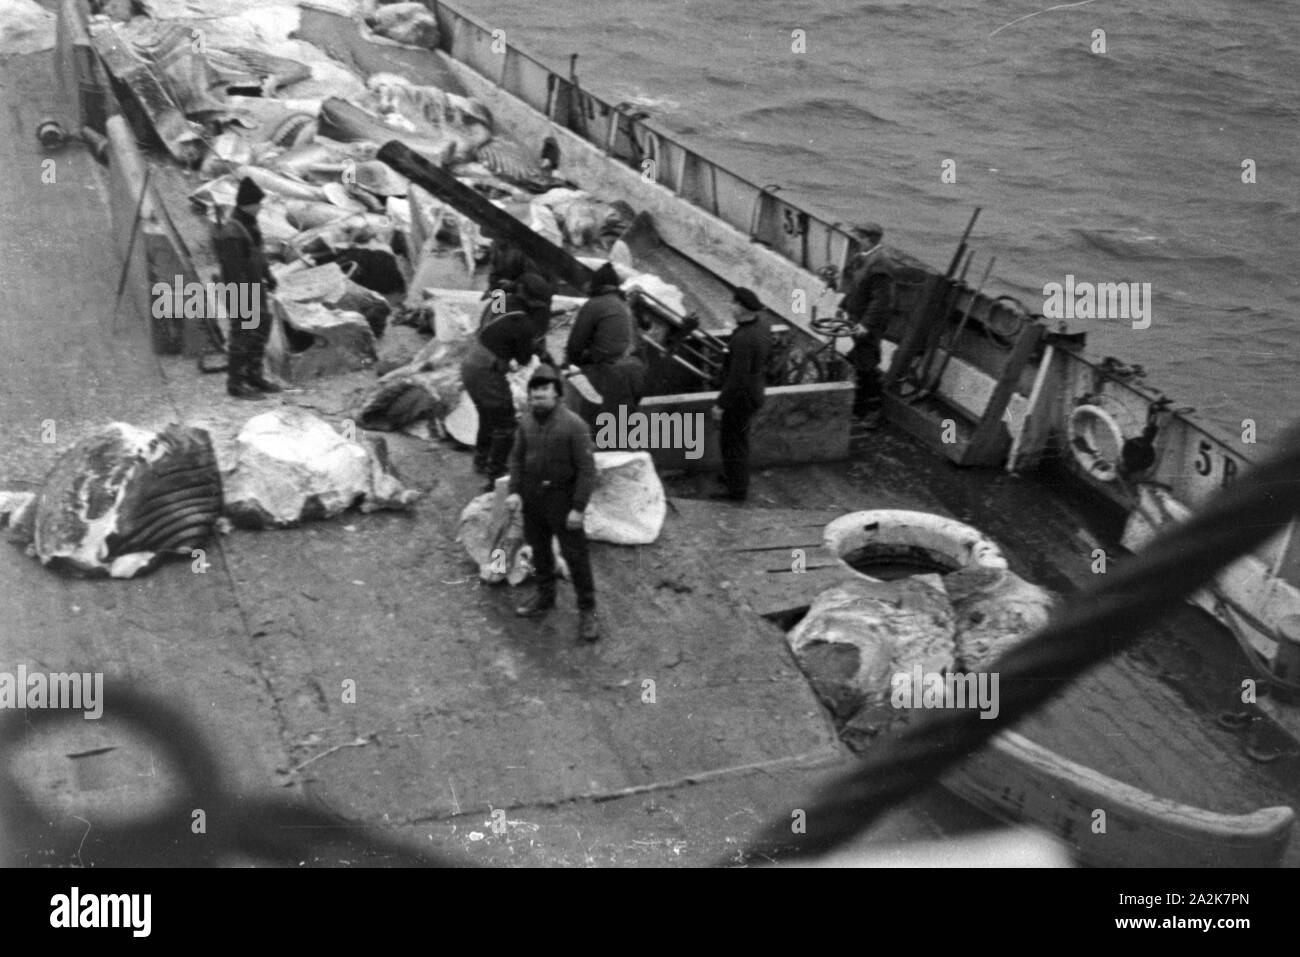 Die Besatzung des Fabrikschiffs "Jan Wellem" beim Abflensen des Walkadavers, 1930er Jahre. Crew der Fabrik Schiff "Jan Wellem" Schlachten ein Wal Kadaver, 1930er Jahre. Stockfoto